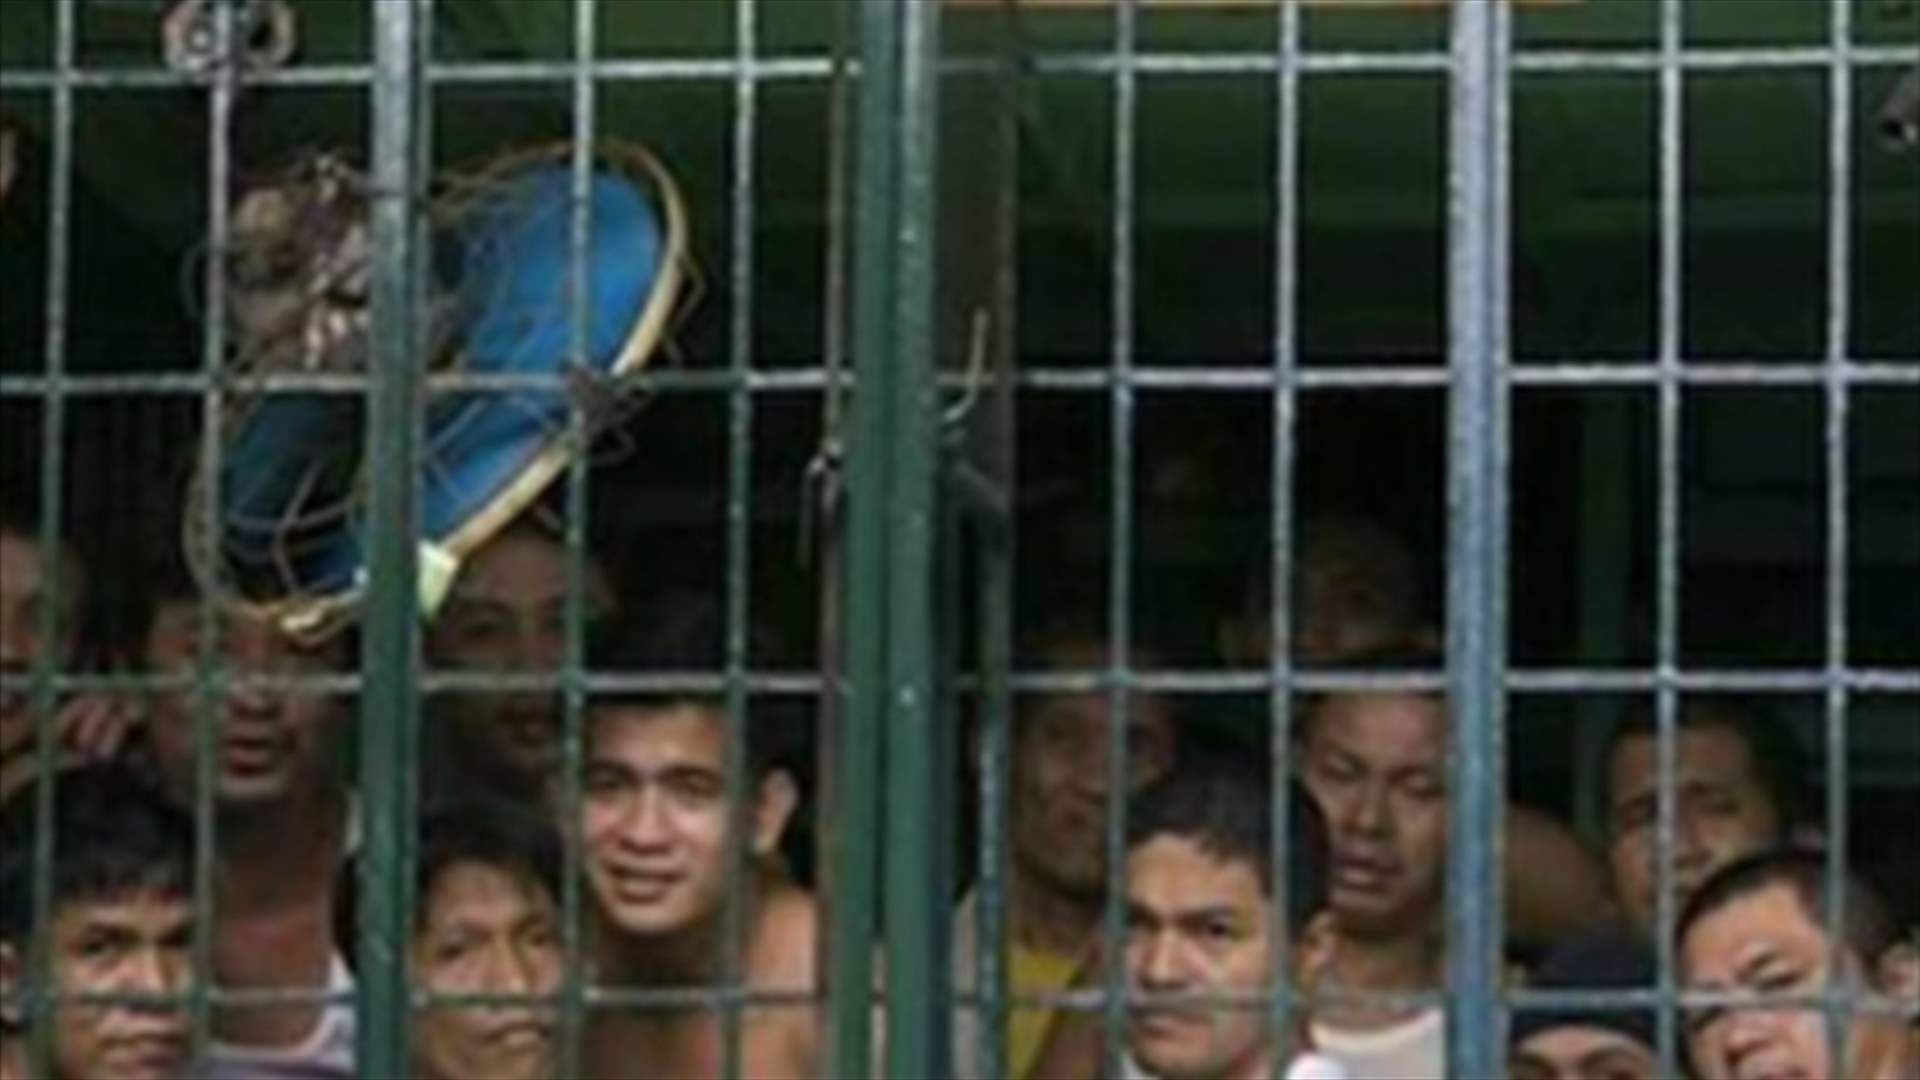 اسلاميون يهاجمون سجنا بجنوب الفيليبين